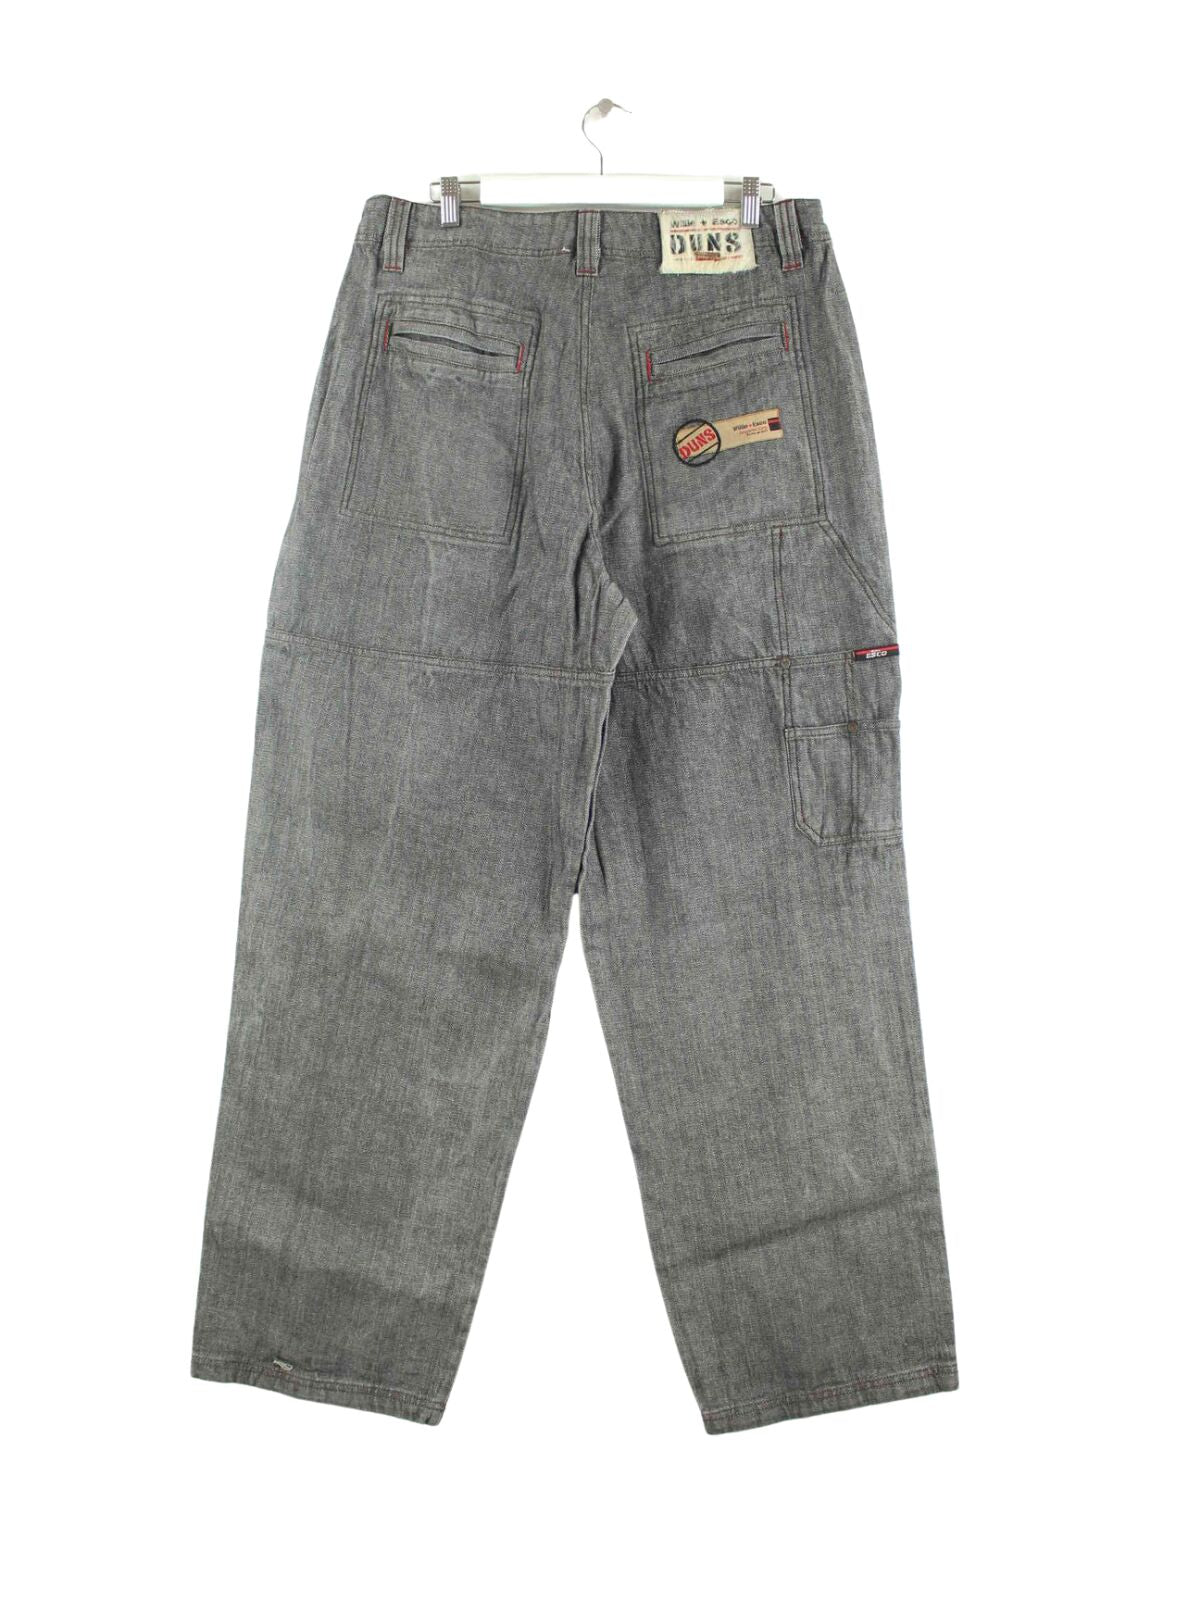 Vintage y2k Esco Duns Carpenter Jeans Grau W34 L34 (back image)